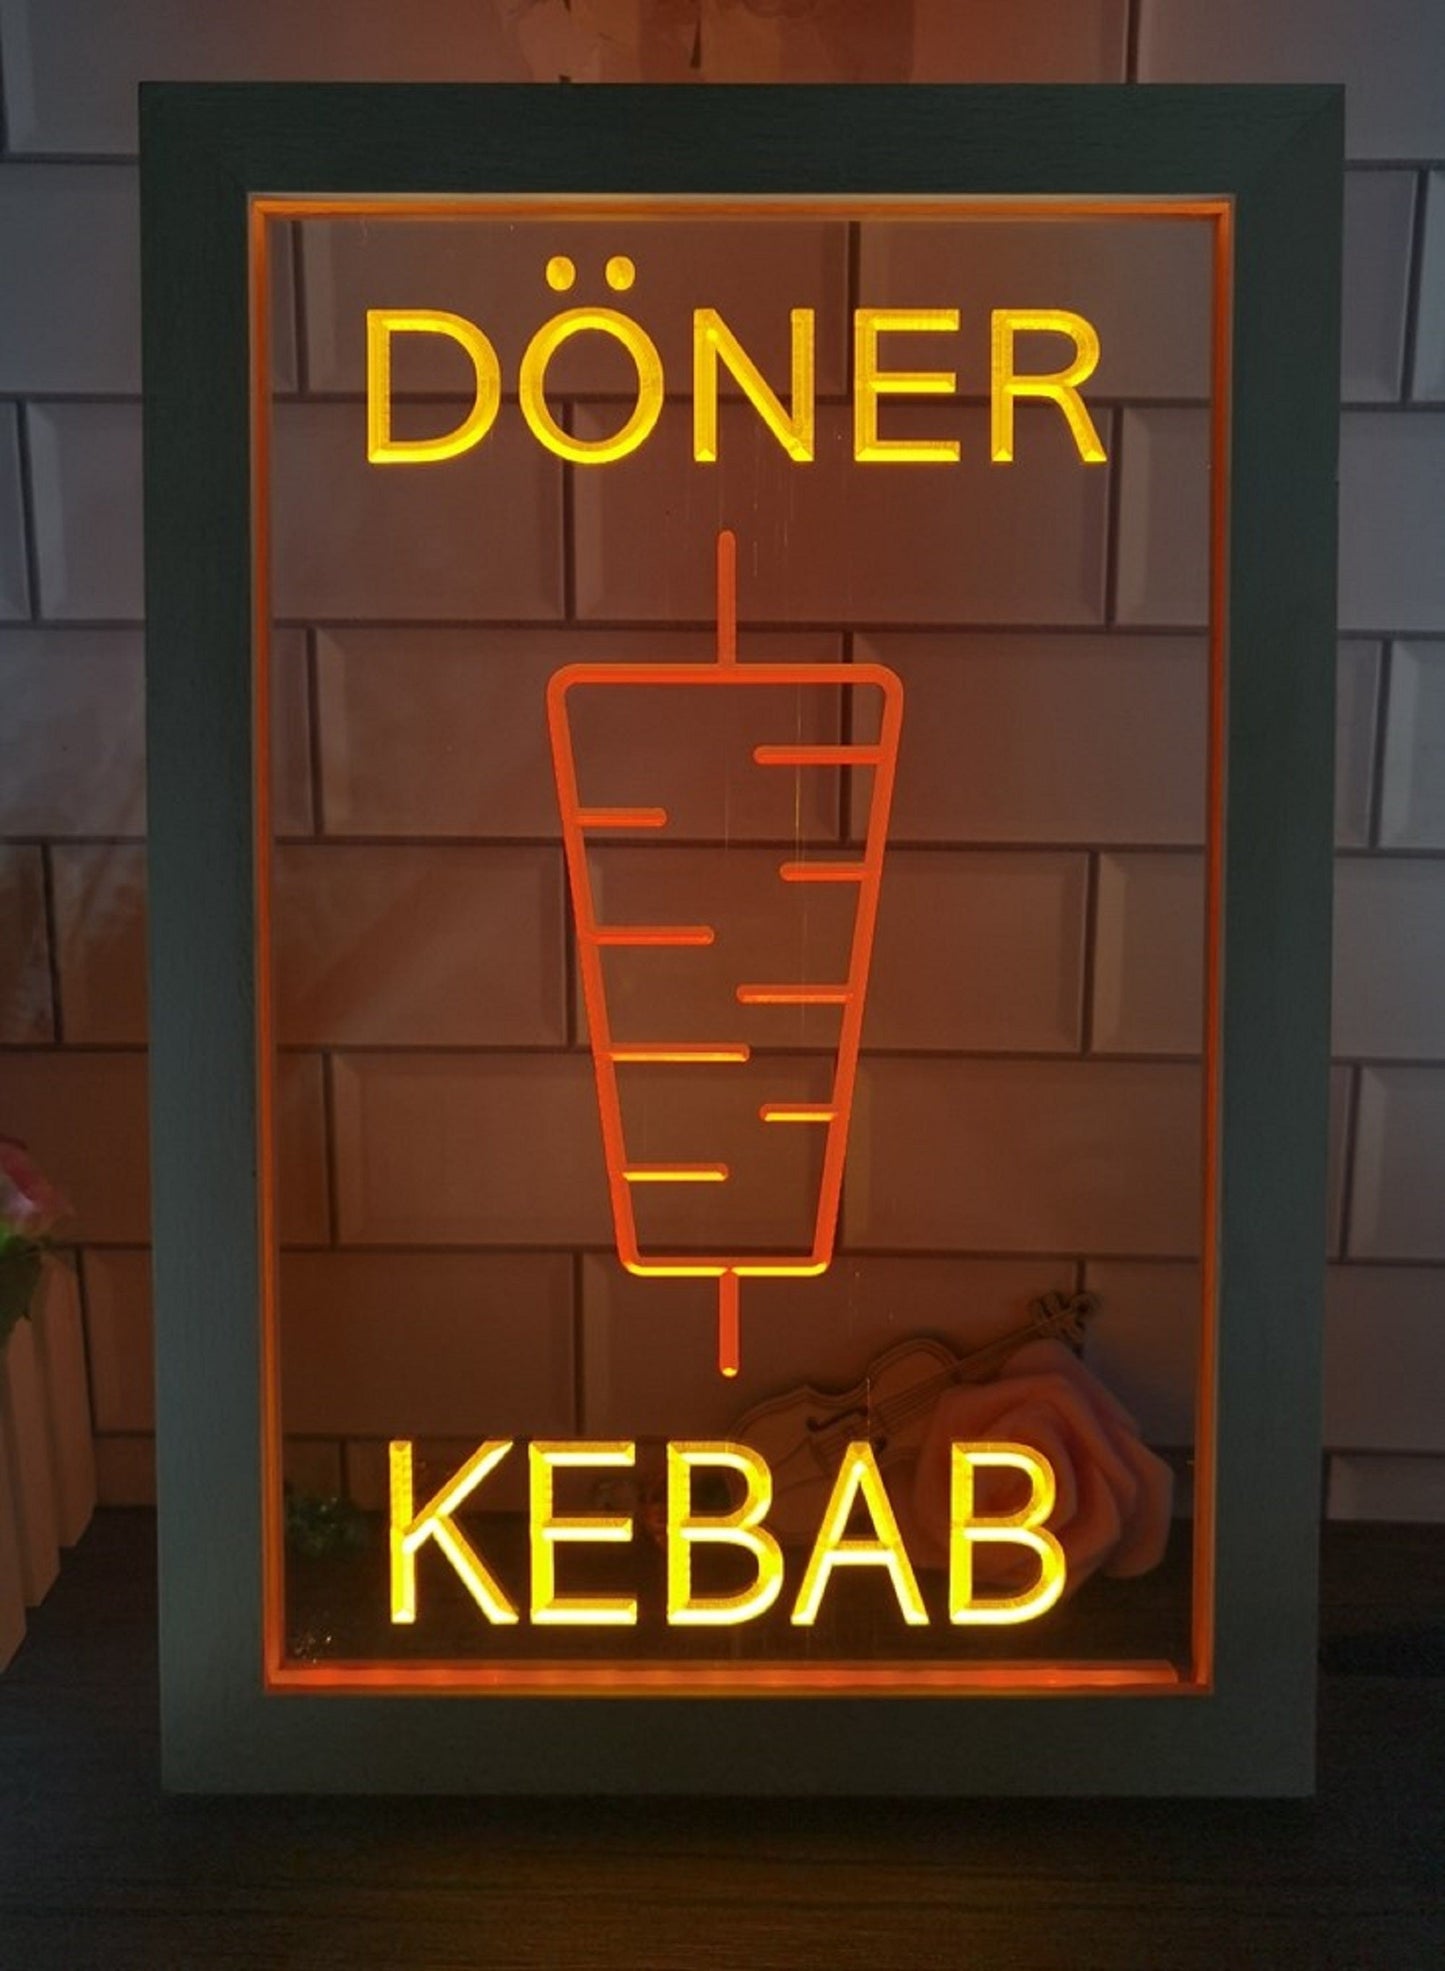 Neon Sign Framed Dual Color Doner Kebab Restaurant Fast Food Shop Wall Decor